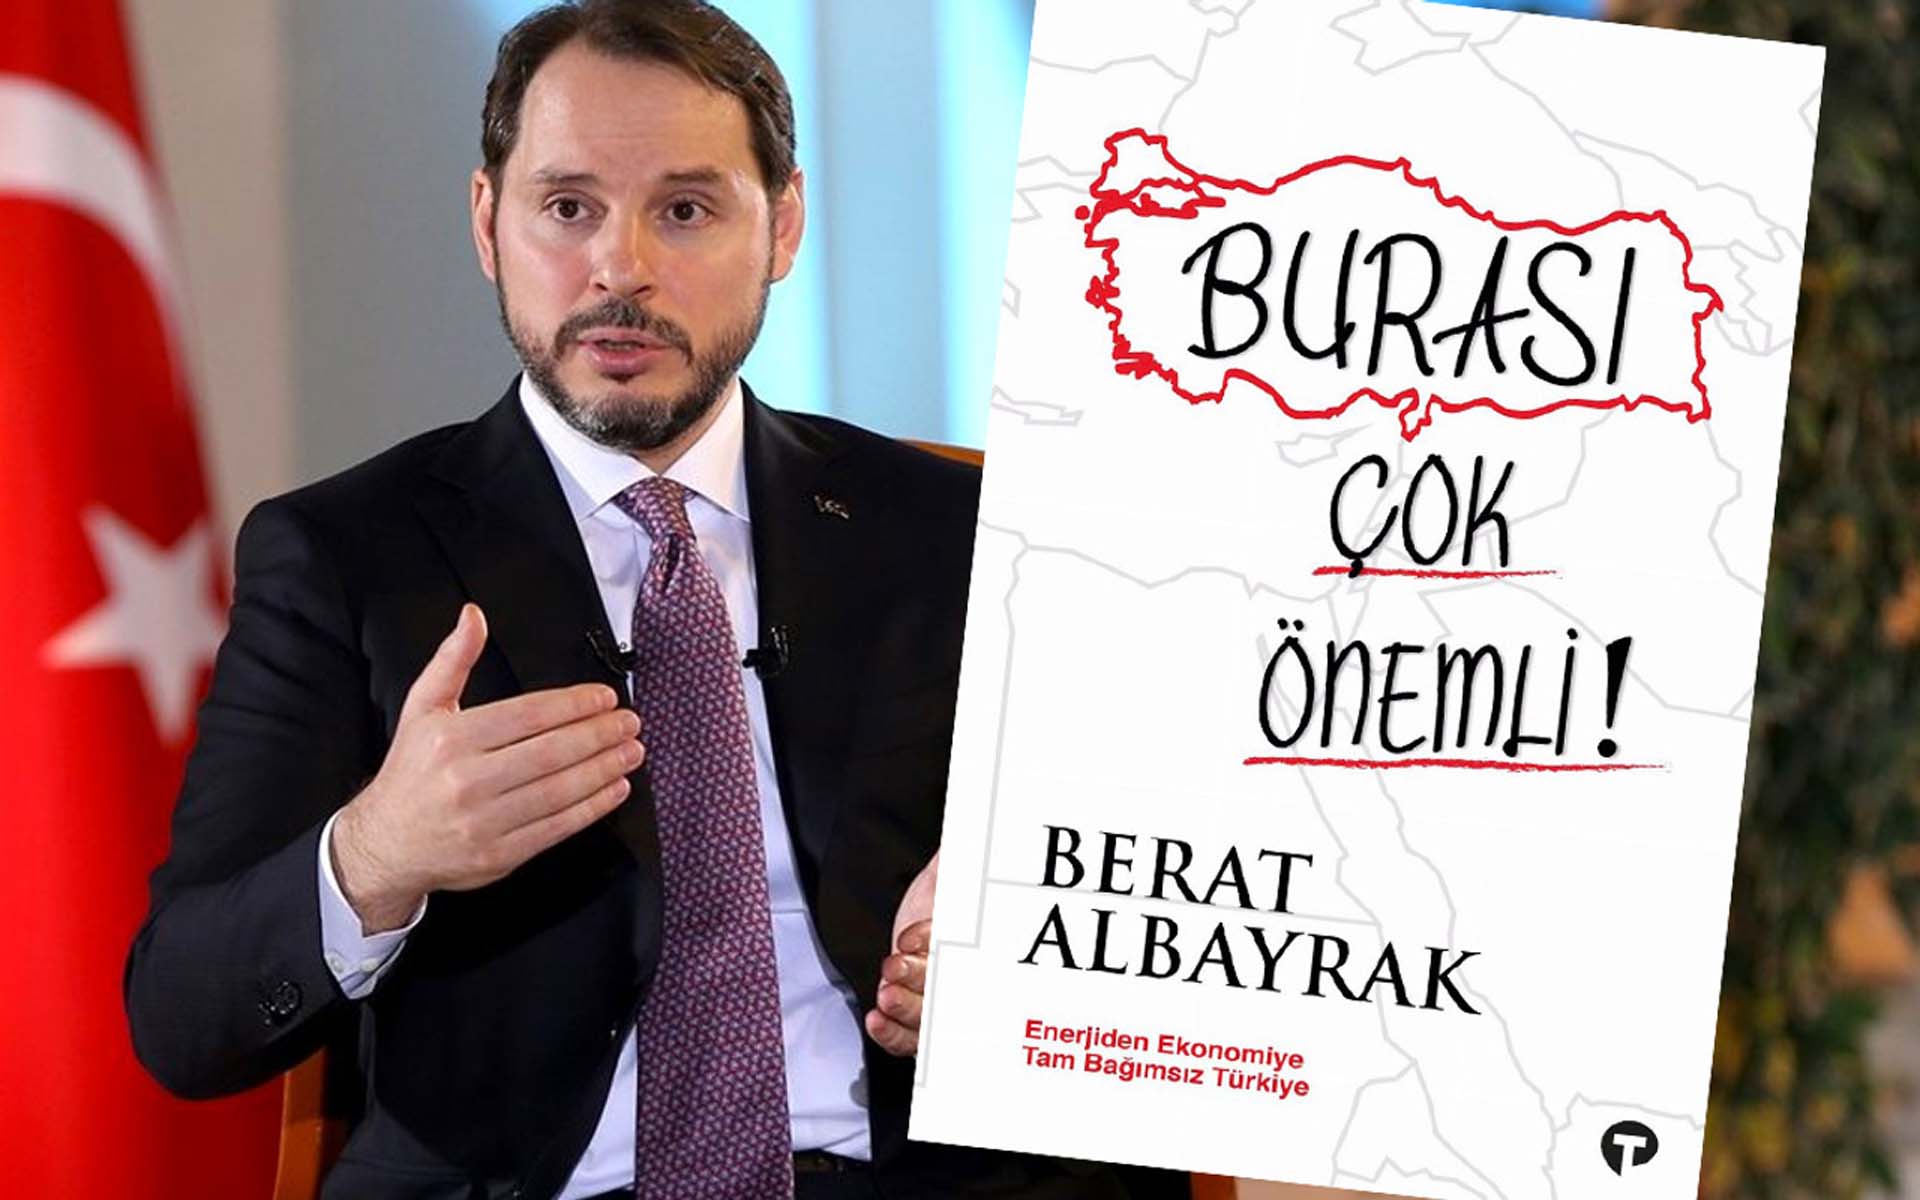 Ahmet Hakan, Berat Albayrak'ın Burası Çok Önemli kitabını yazdı: Ekonomi ve enerji konusunda hayli bilgileneceksiniz